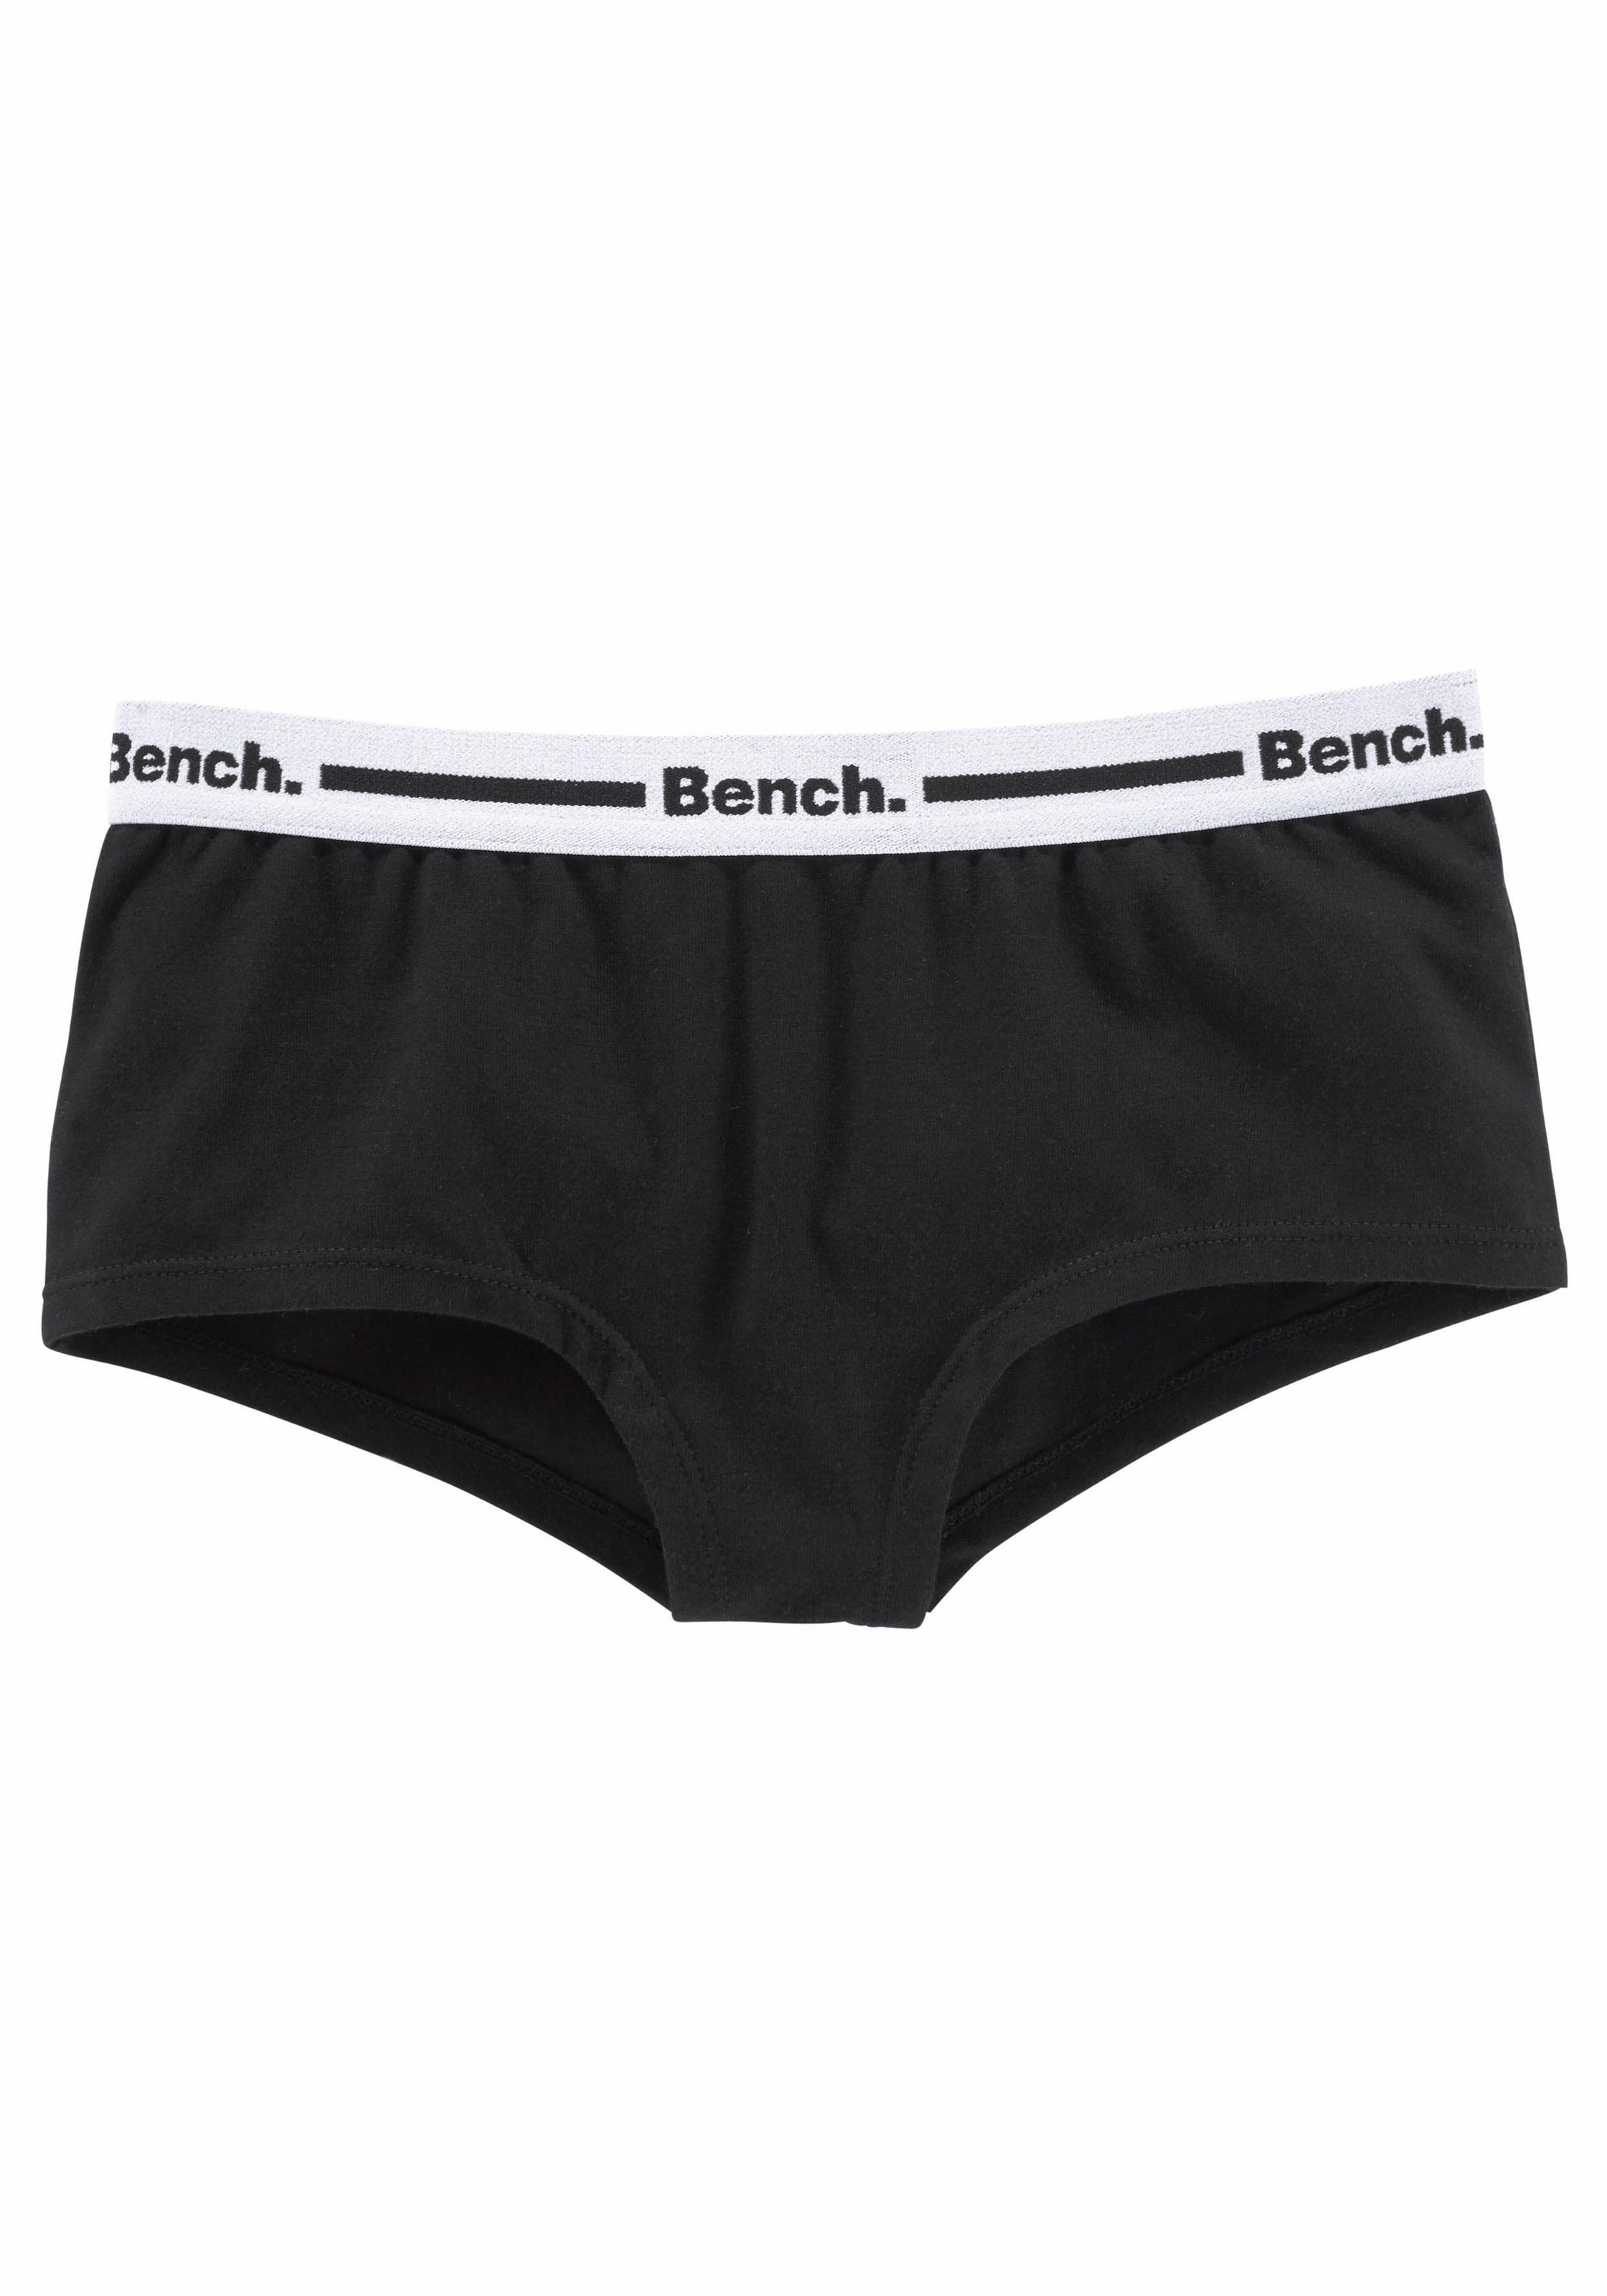 Bench. Panty (Packung Logo mit 3 Webbund St.)